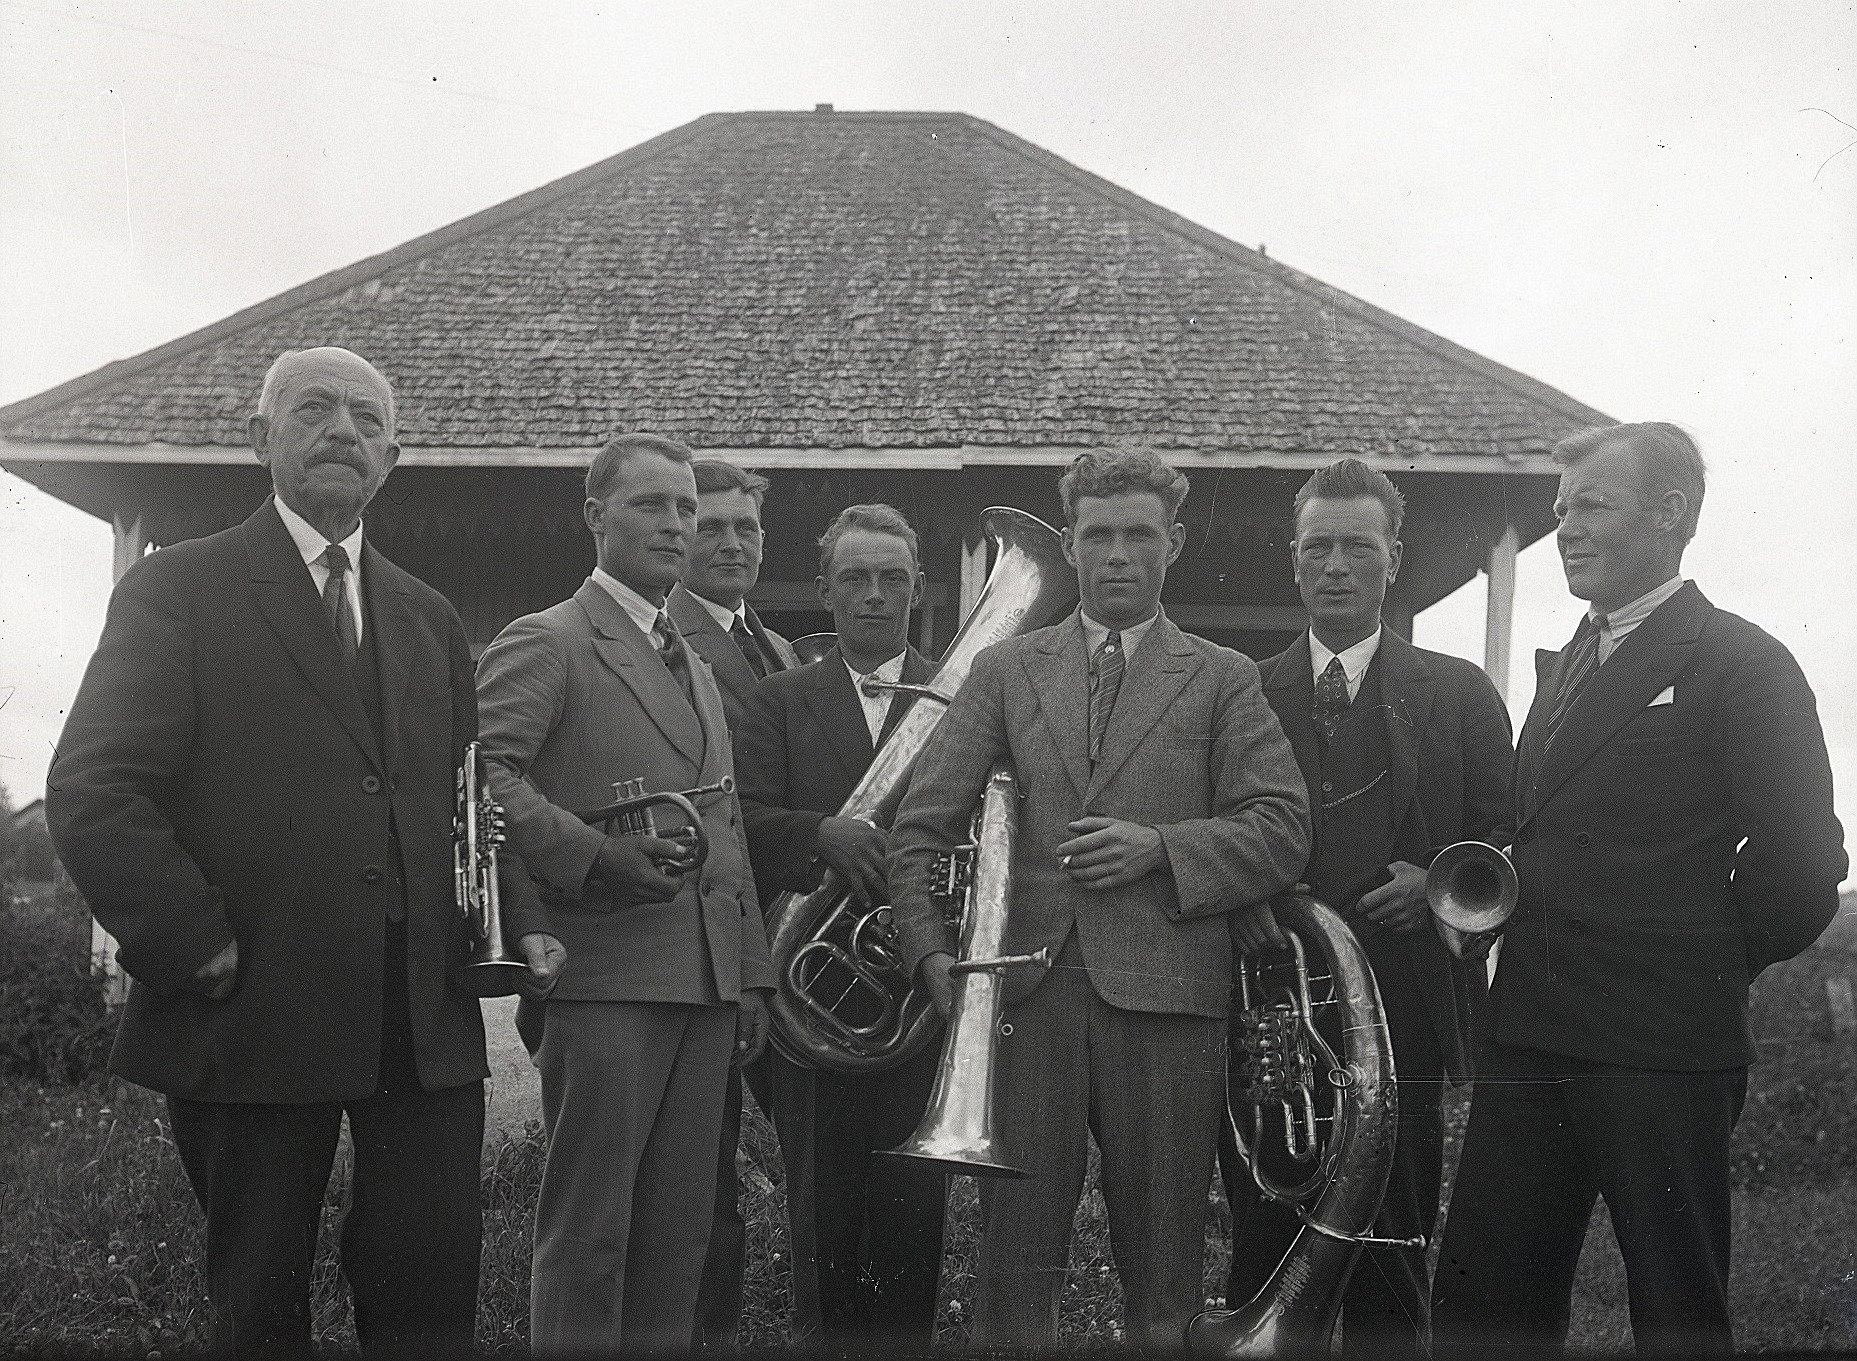 Hornseptetten i Lappfjärd 1928. Längst till vänster står ledaren Paul Ketz, följande är Selim Lillgäls, Emil Bergmark, Valter Ådjers, Johan Solfvin, Otto Knus och Edvard Nyström.